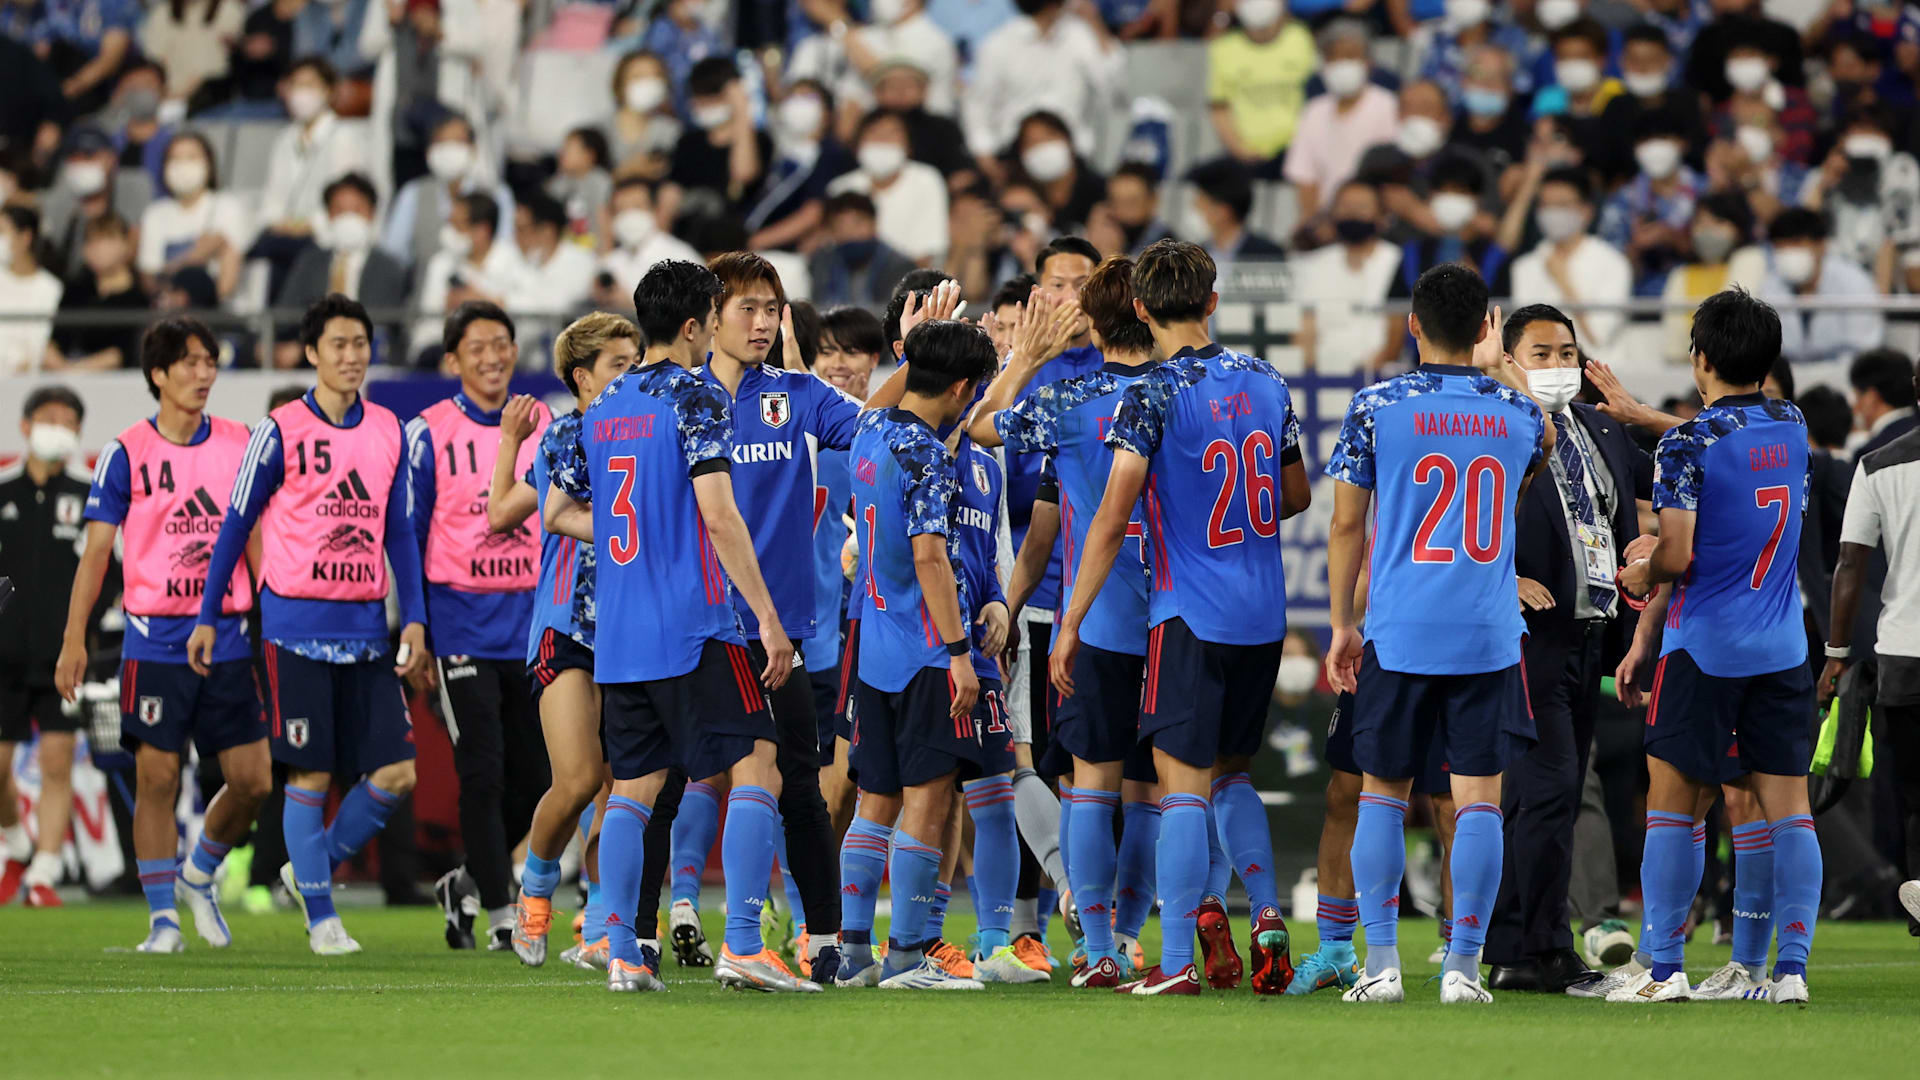 6月14日 キリンカップサッカー 日本 Vs チュニジアの放送予定 Samurai Blue 6月シリーズ最終戦